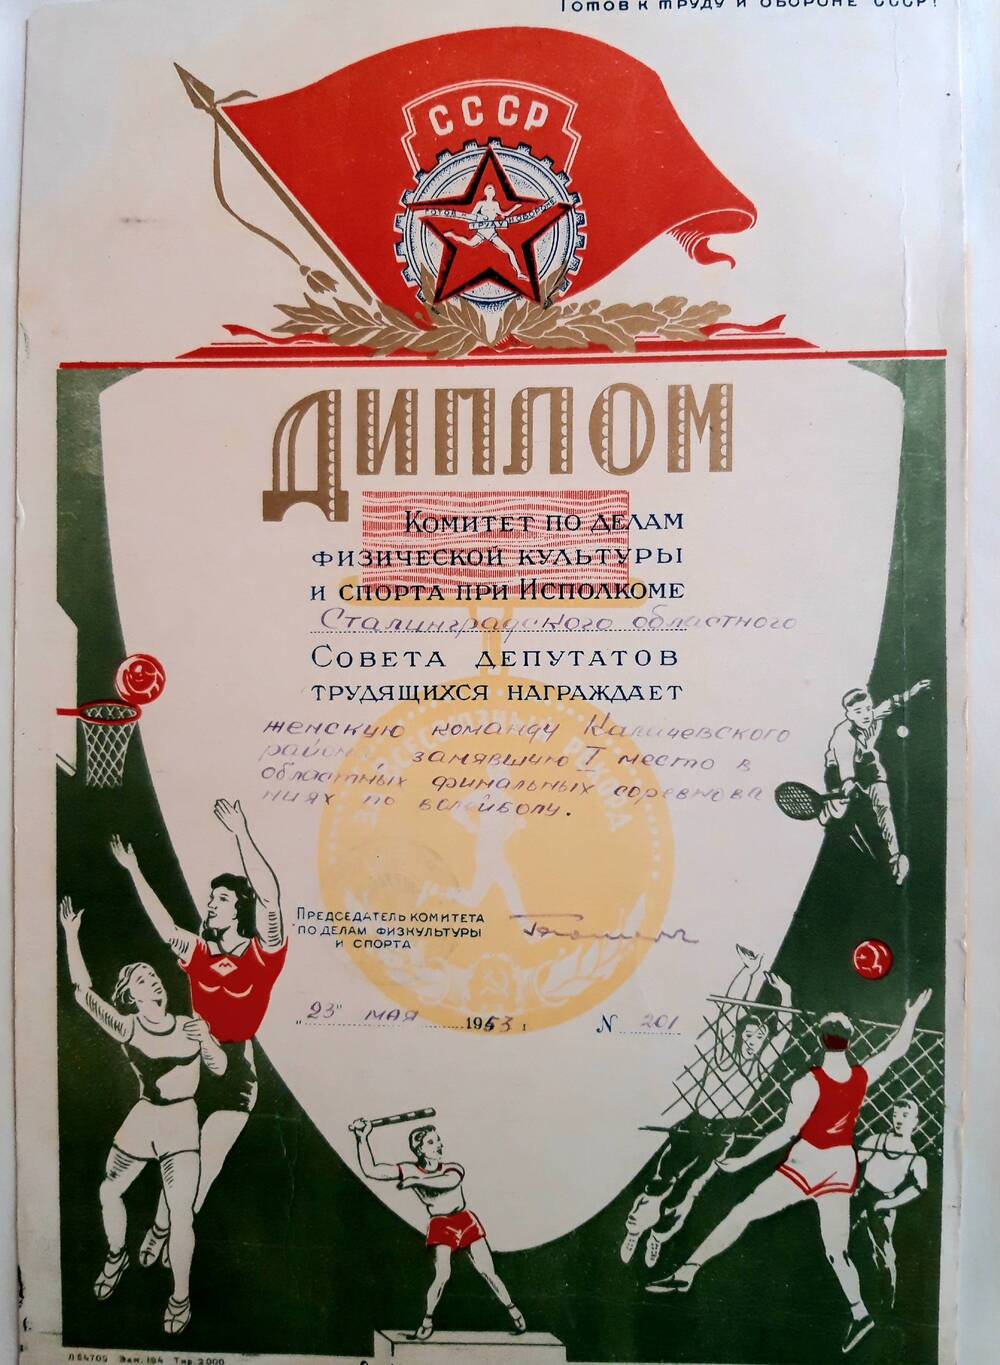 Диплом №201 женской команды  Калачевского района, занявшей I место в областных финальных соревнованиях по волейболу.  г. Сталинград, 23.05.1953